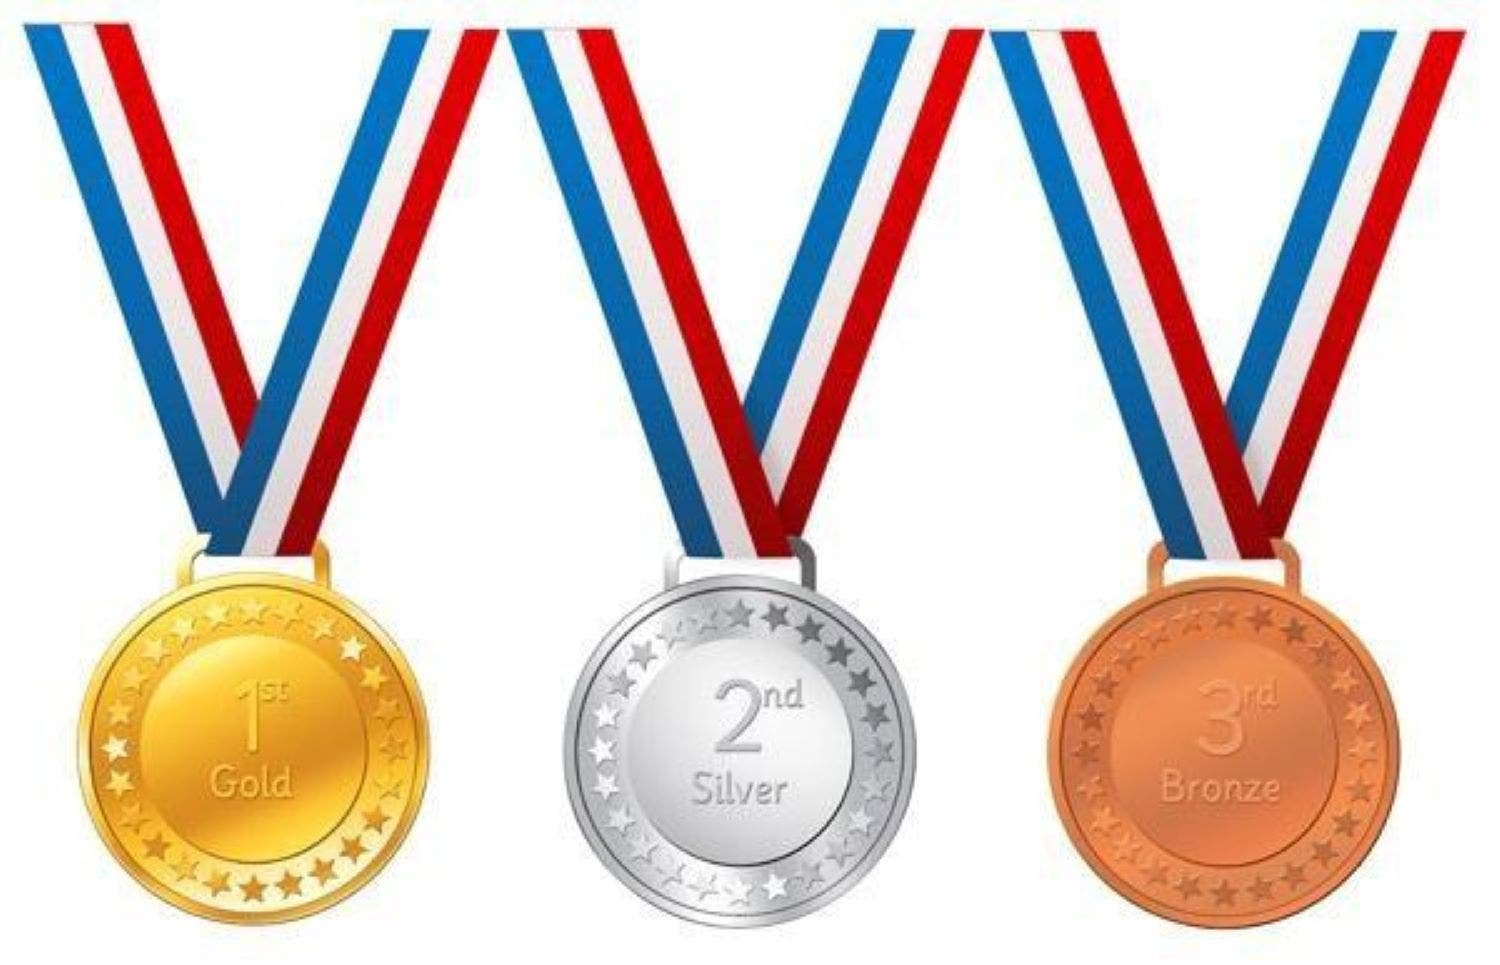 Medal get. Медали спортивные. Медаль на прозрачном фоне. Медаль спорт для детей. Медали для олимпиады в детском саду.